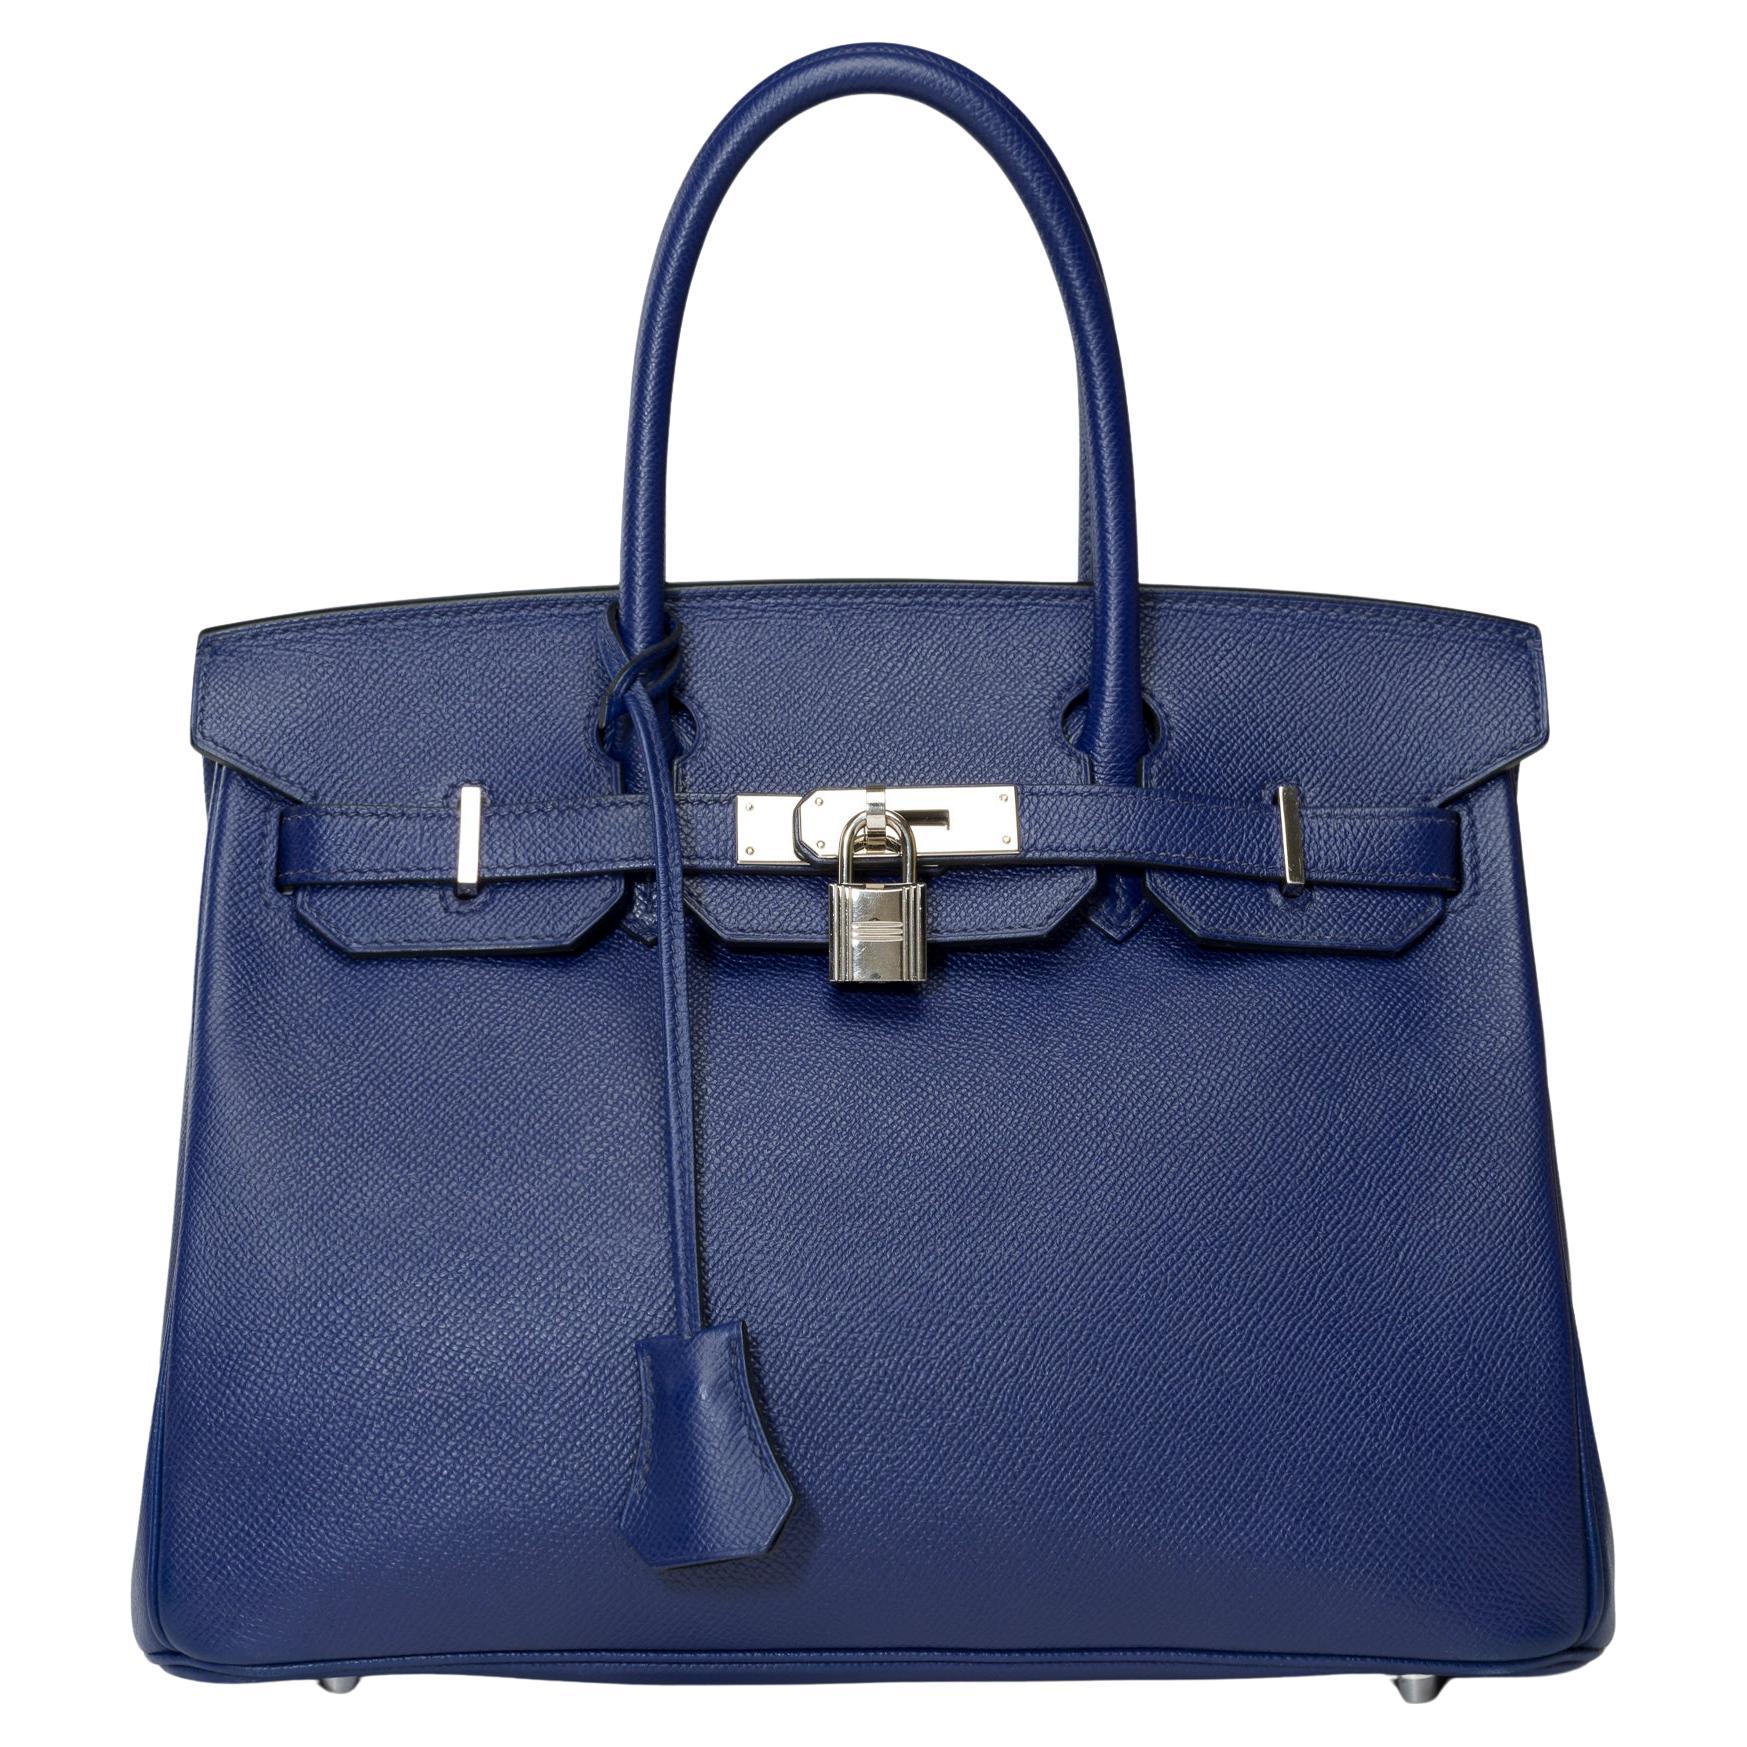 Stunning Hermes Birkin 30 handbag in Blue Sapphire Epsom leather, SHW For Sale